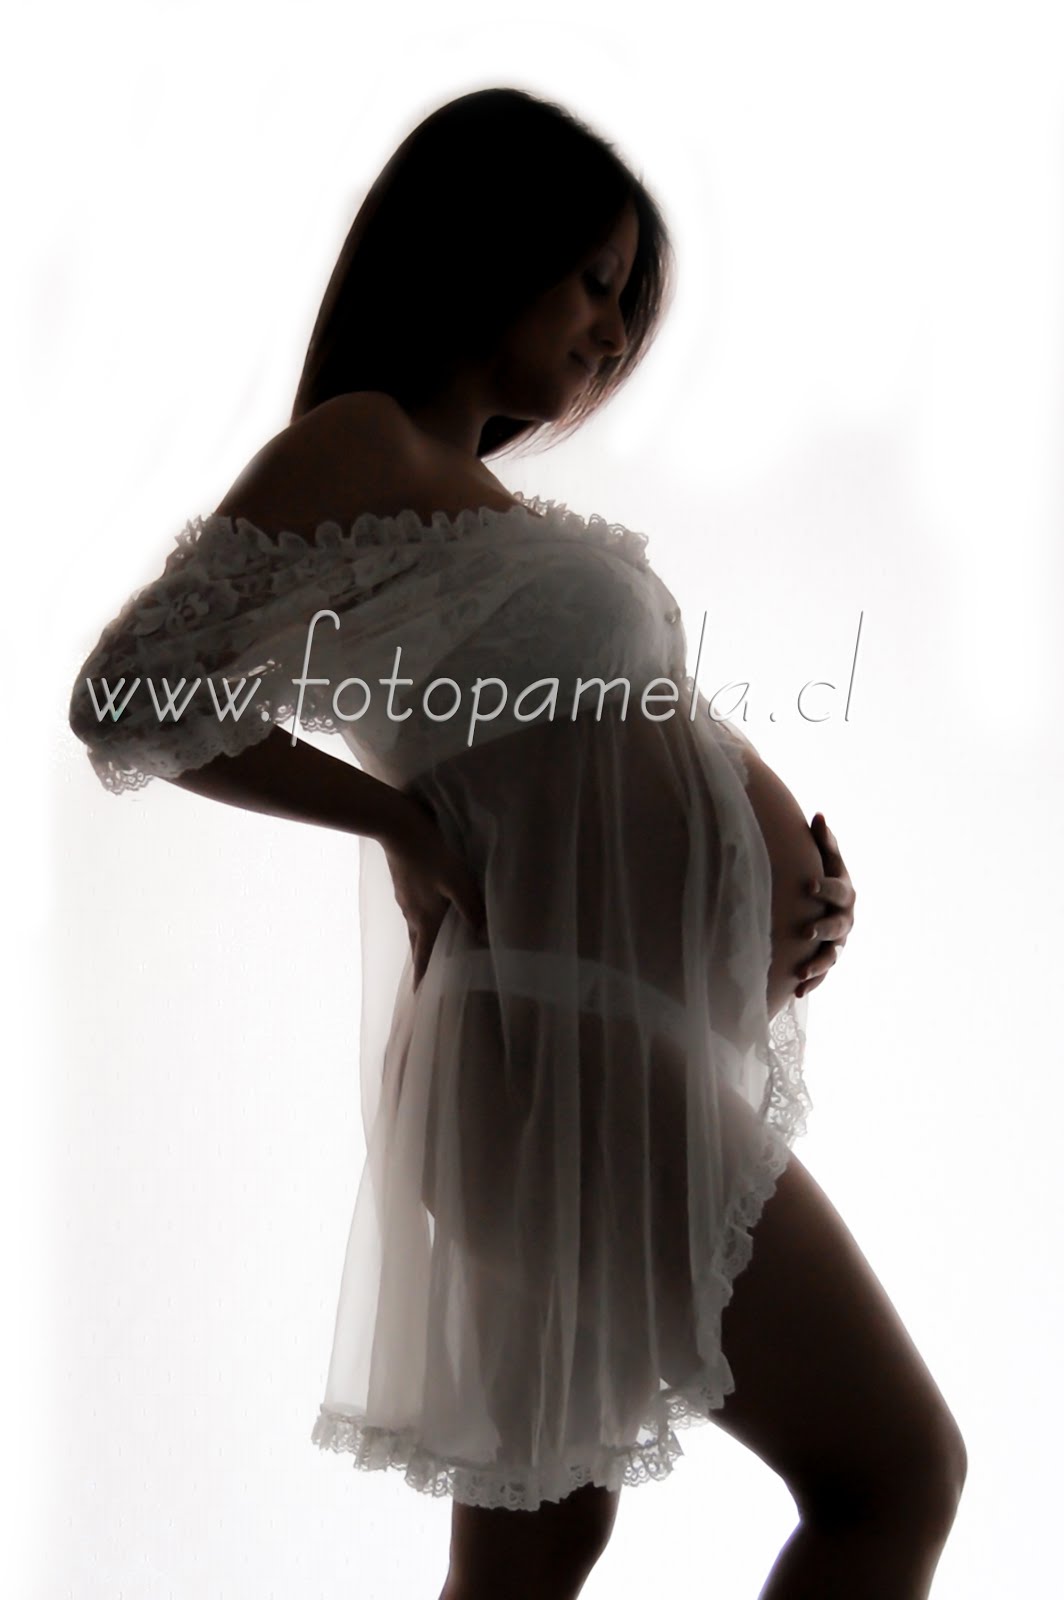 silueta foto embarazada artistica en estudio fotografico en santiago